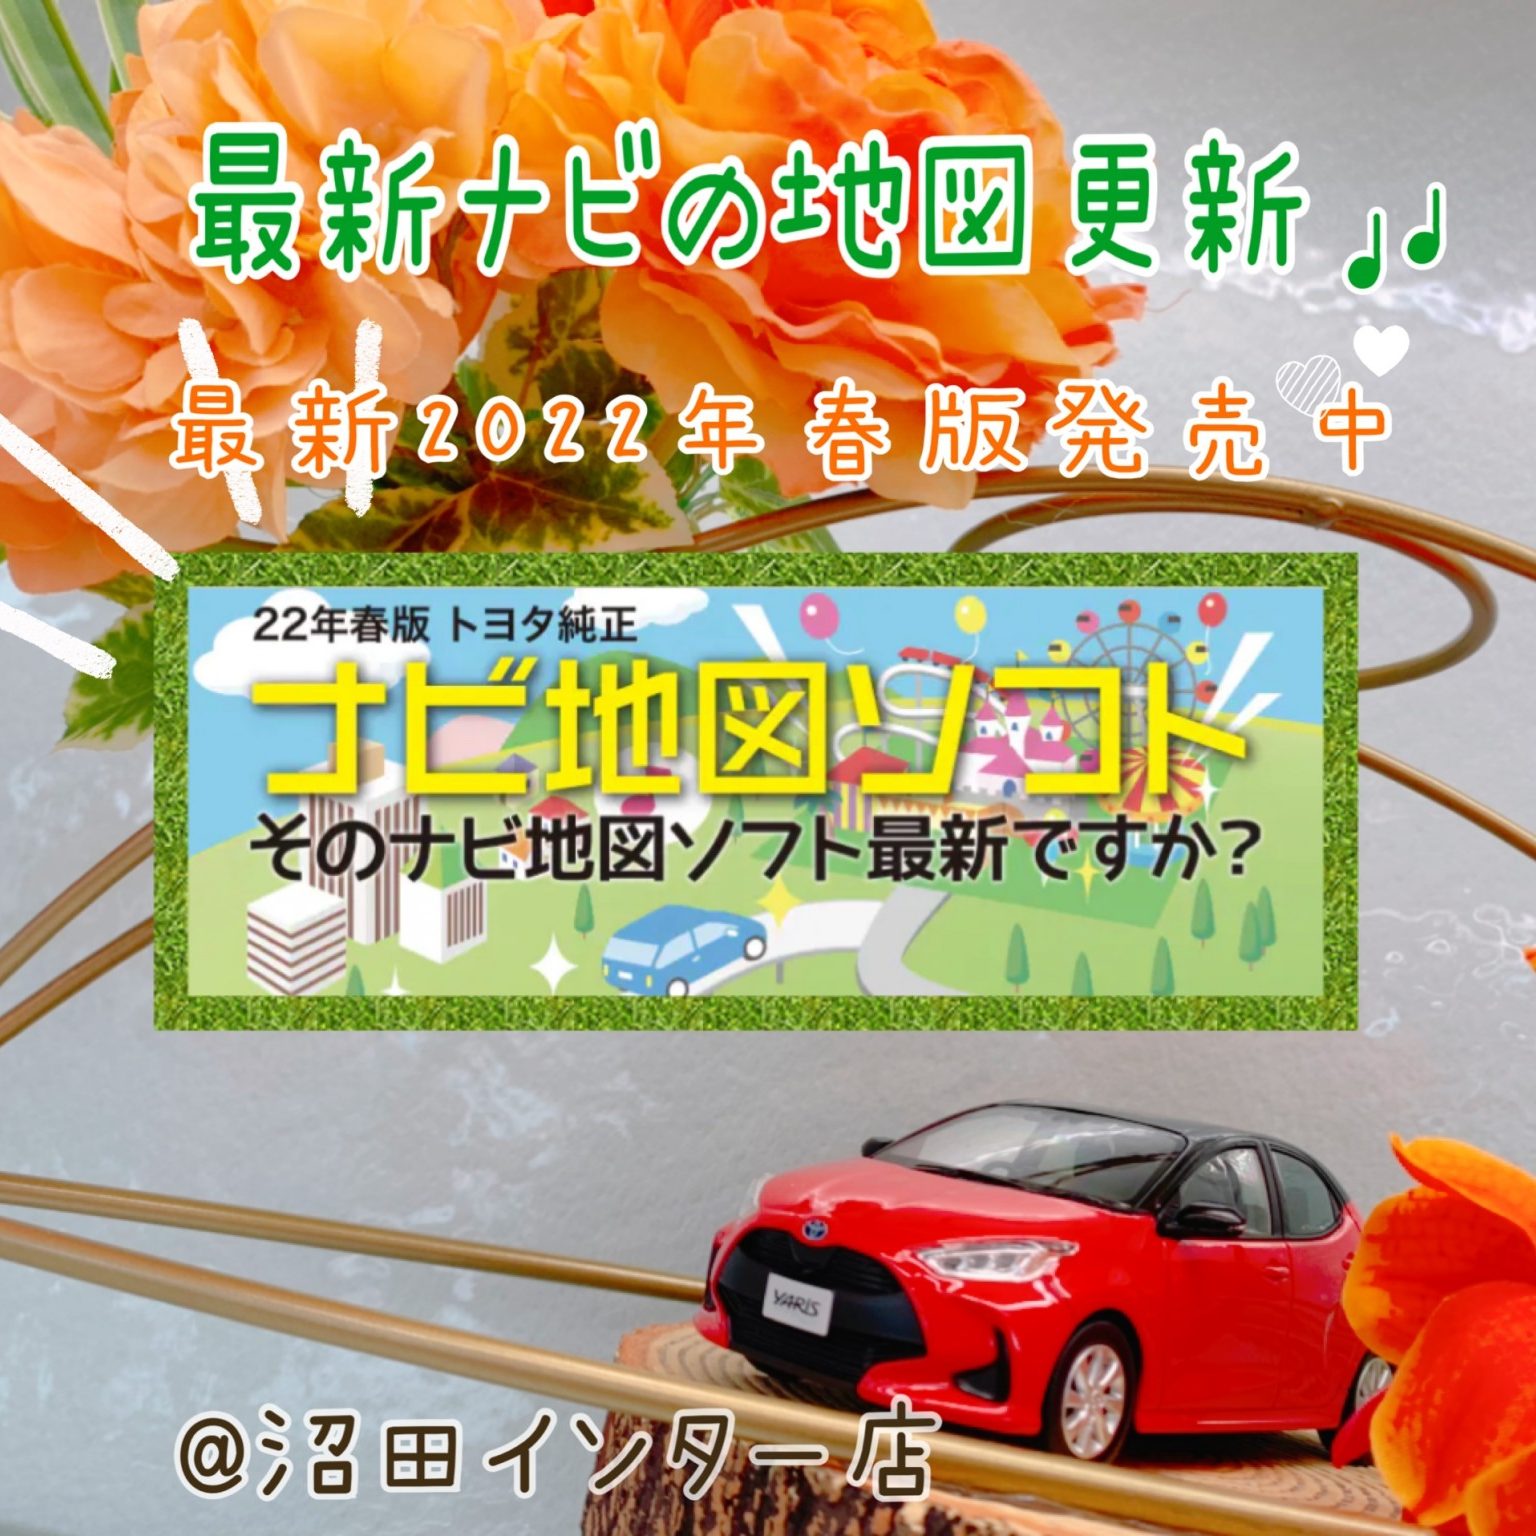 トヨタ純正 ナビ 地図更新 ソフト DVD-ROM2021秋 全国版 2枚組 - カーナビ